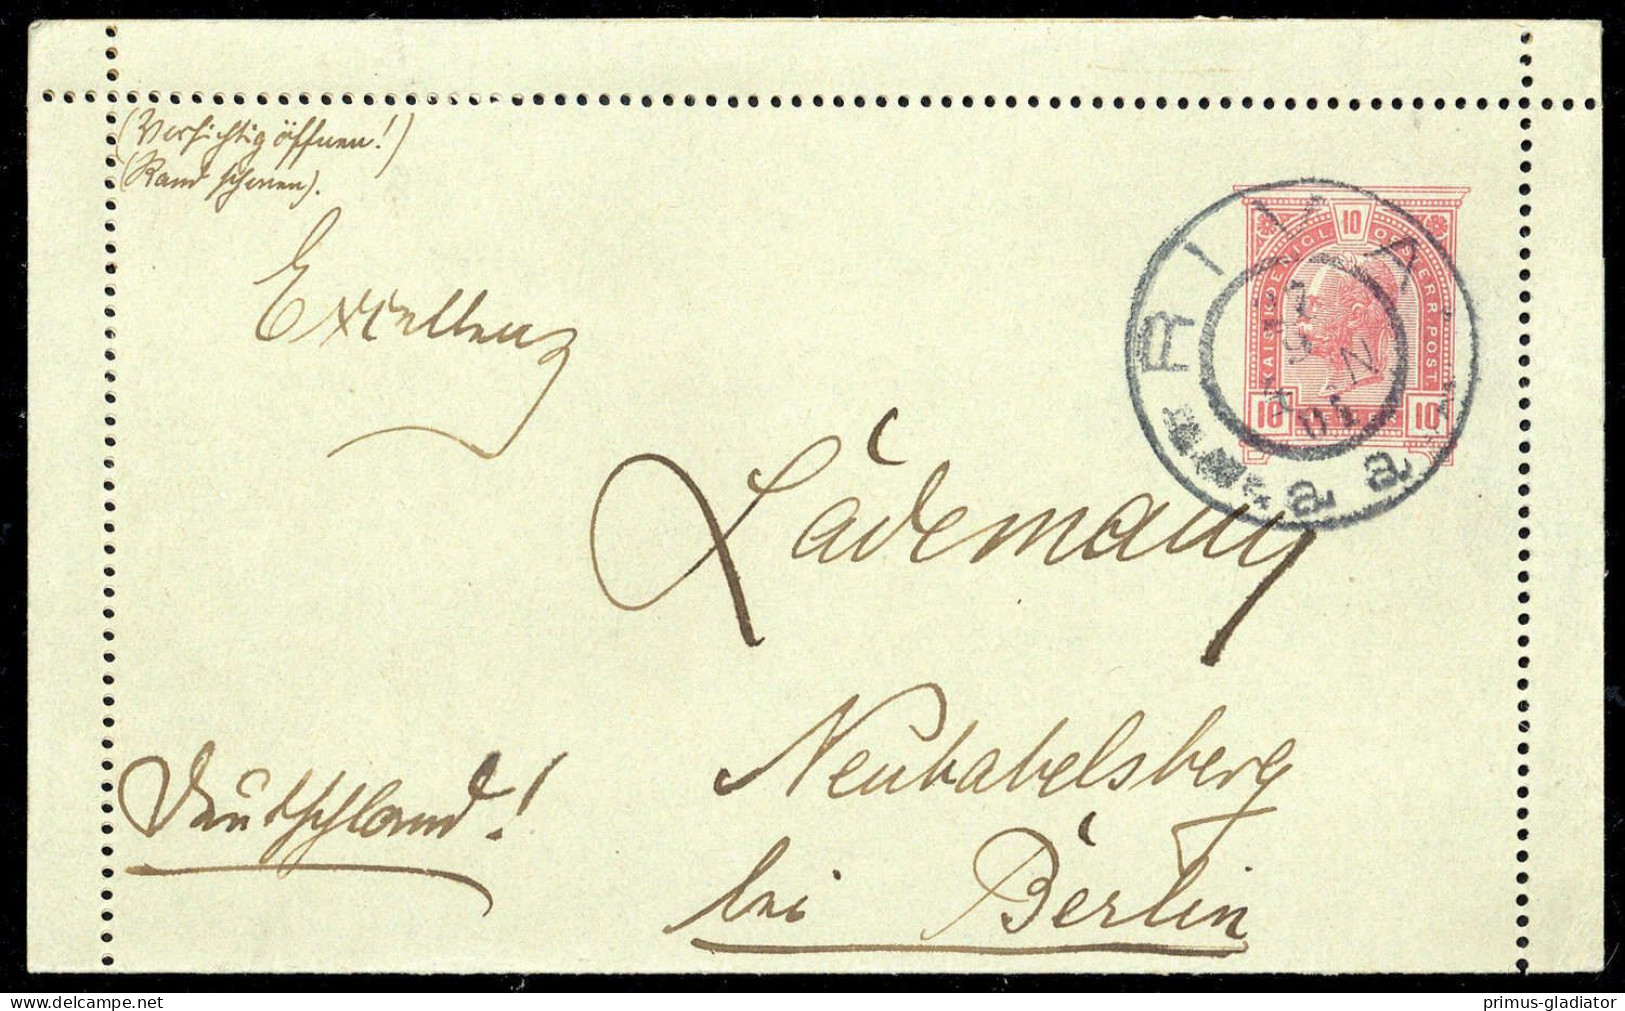 1904, Österreich, PP, Brief - Mechanische Afstempelingen